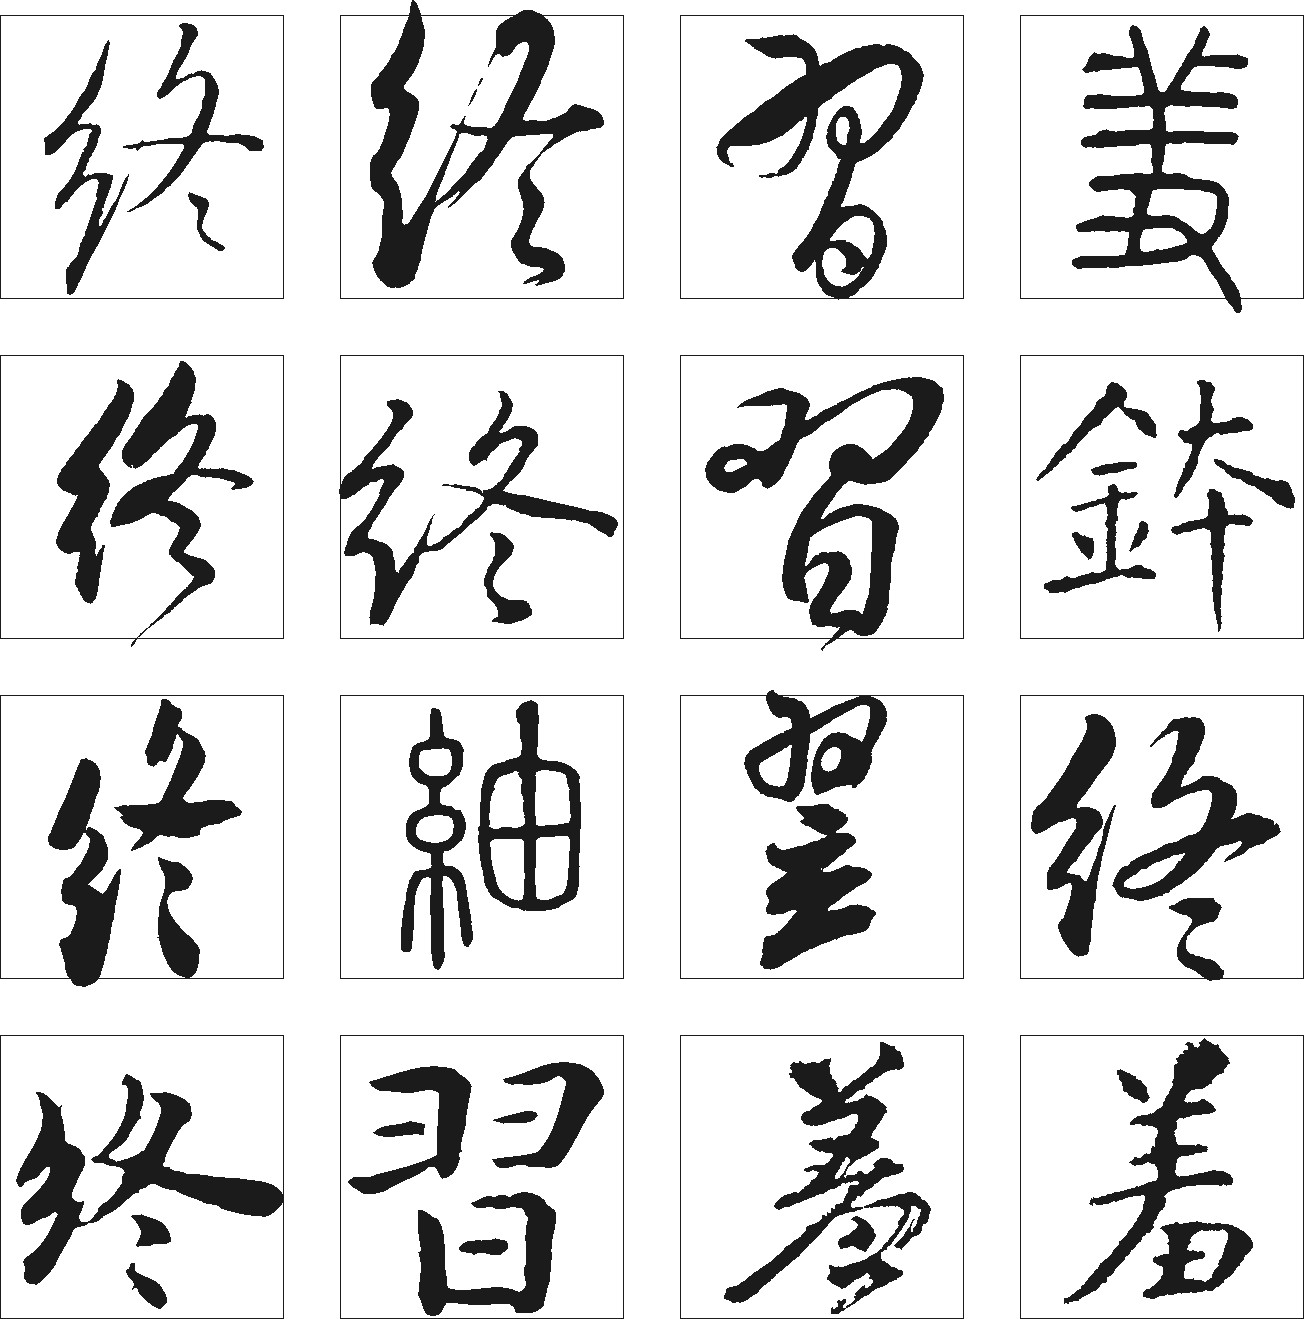 好_书法字体_字体设计作品-中国字体设计网_ziti.cndesign.com